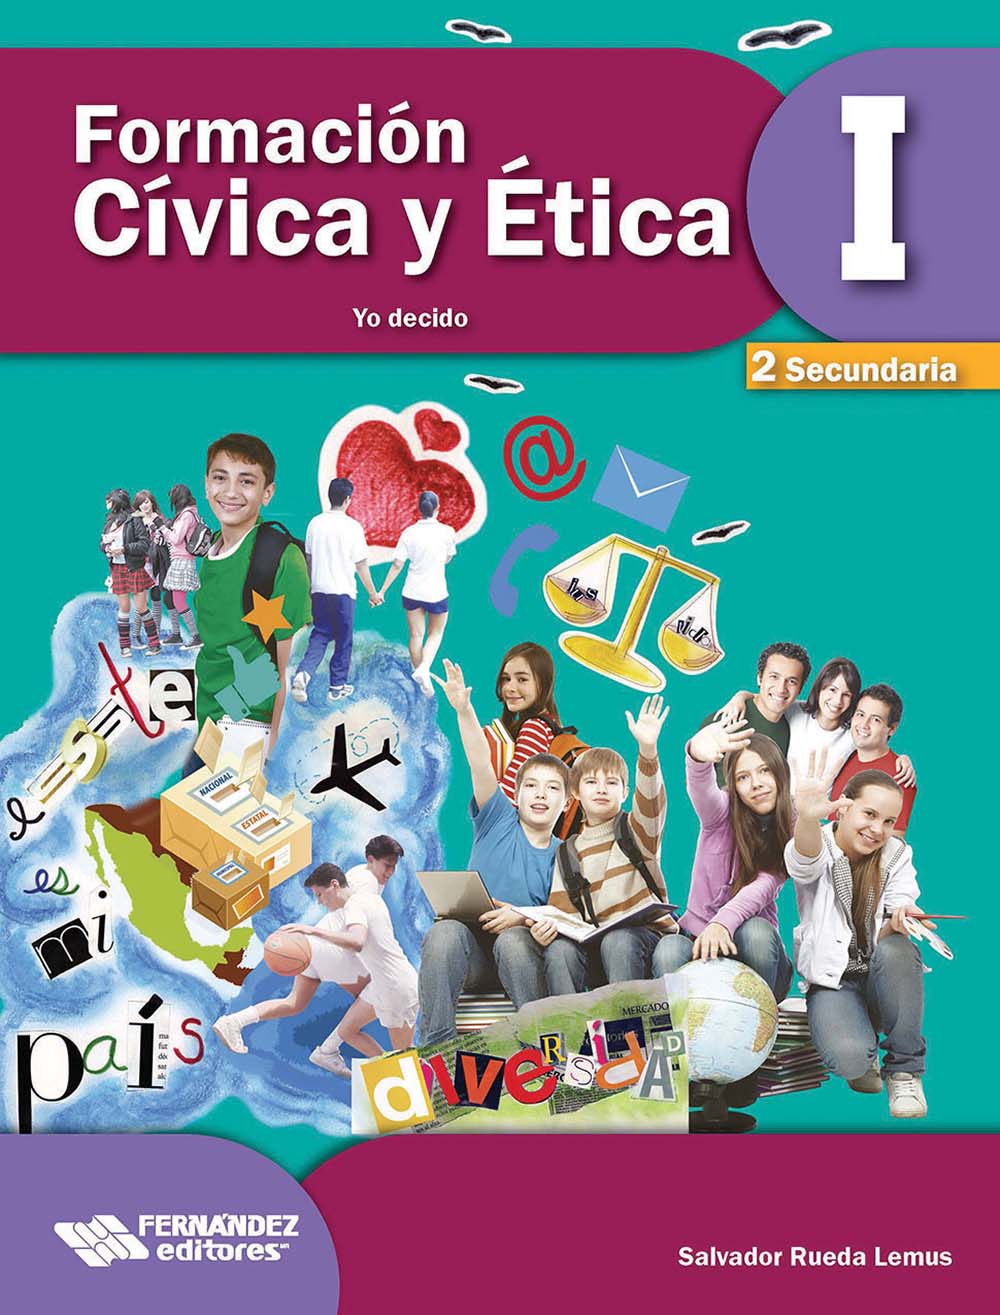 Formación Cívica y Ética 1. Yo decido, Editorial: Fernández Educación, Nivel: Secundaria, Grado: 2